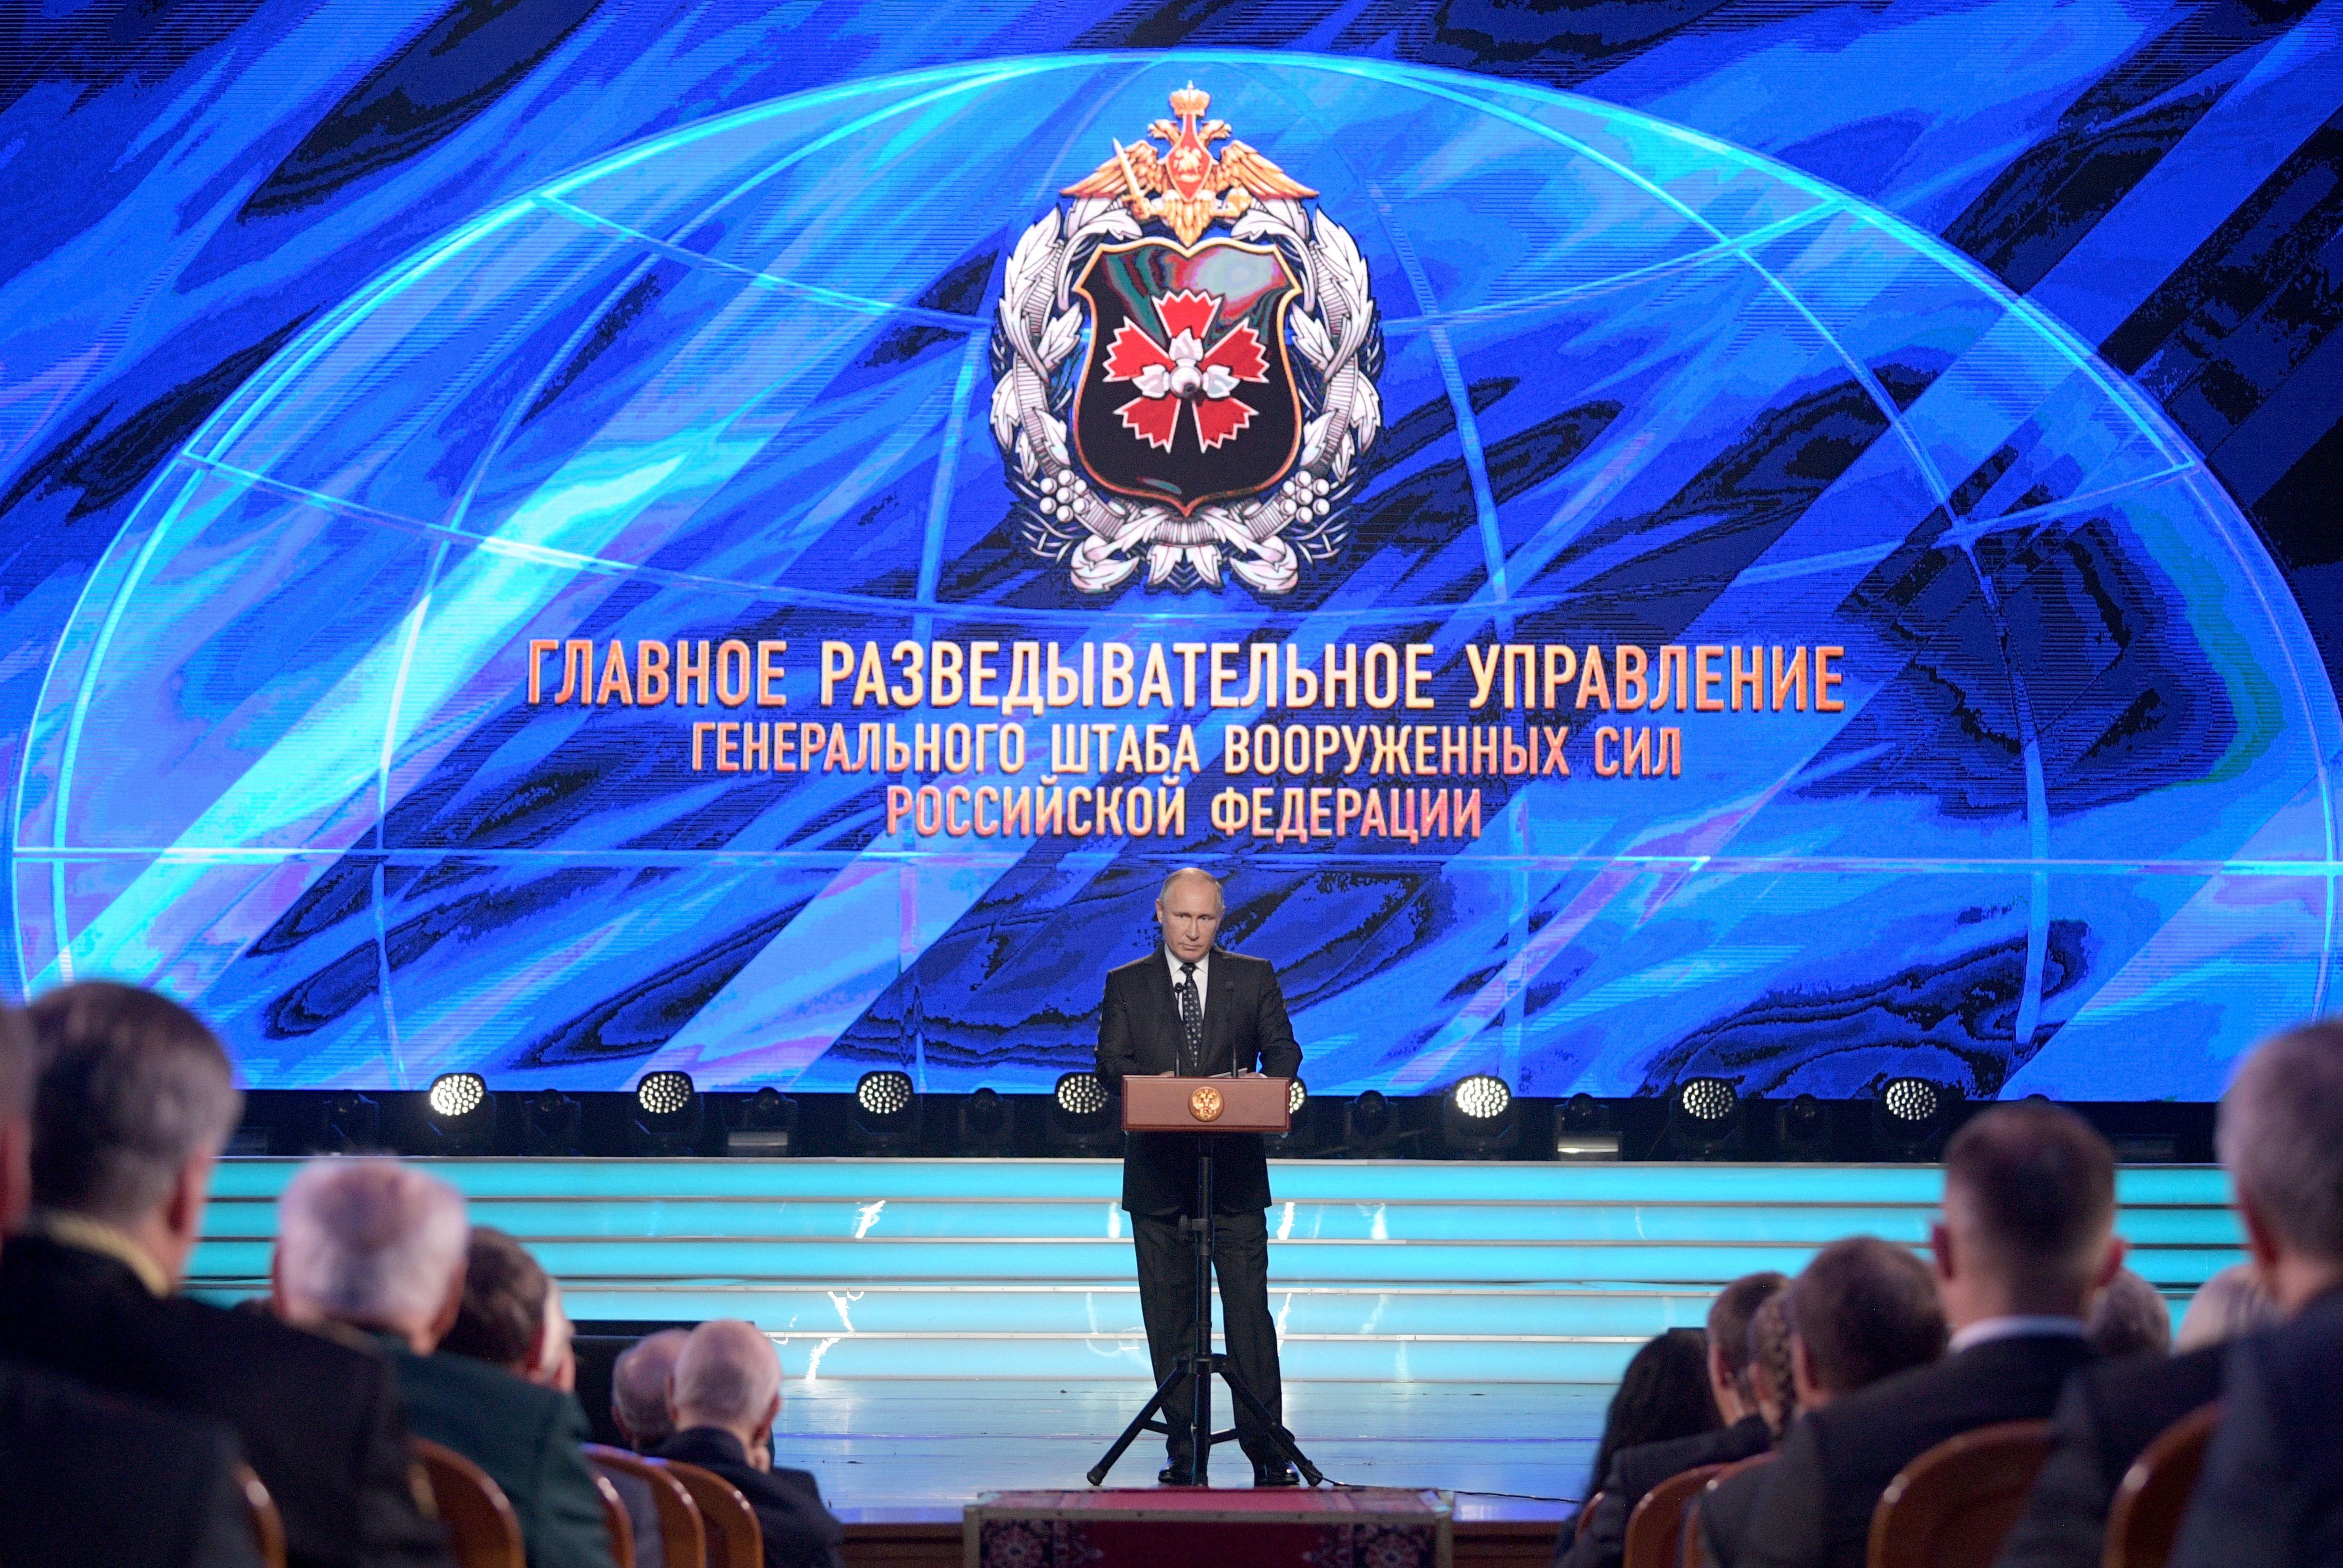 Володимир Путін виступає у Держуправлінні розвідки РФ